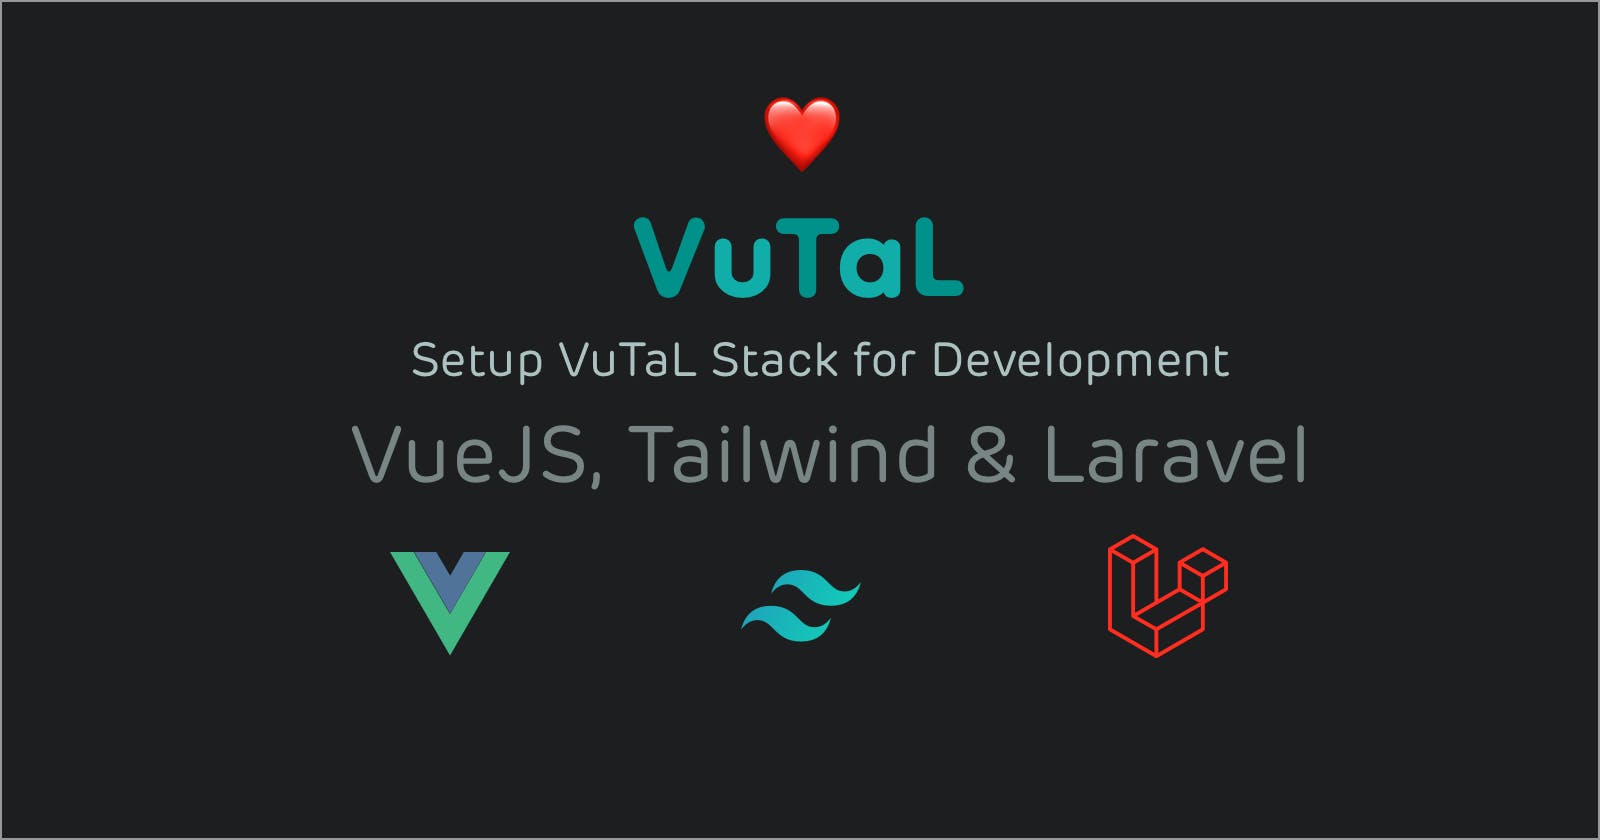 Set up VuTaL Stack for Development